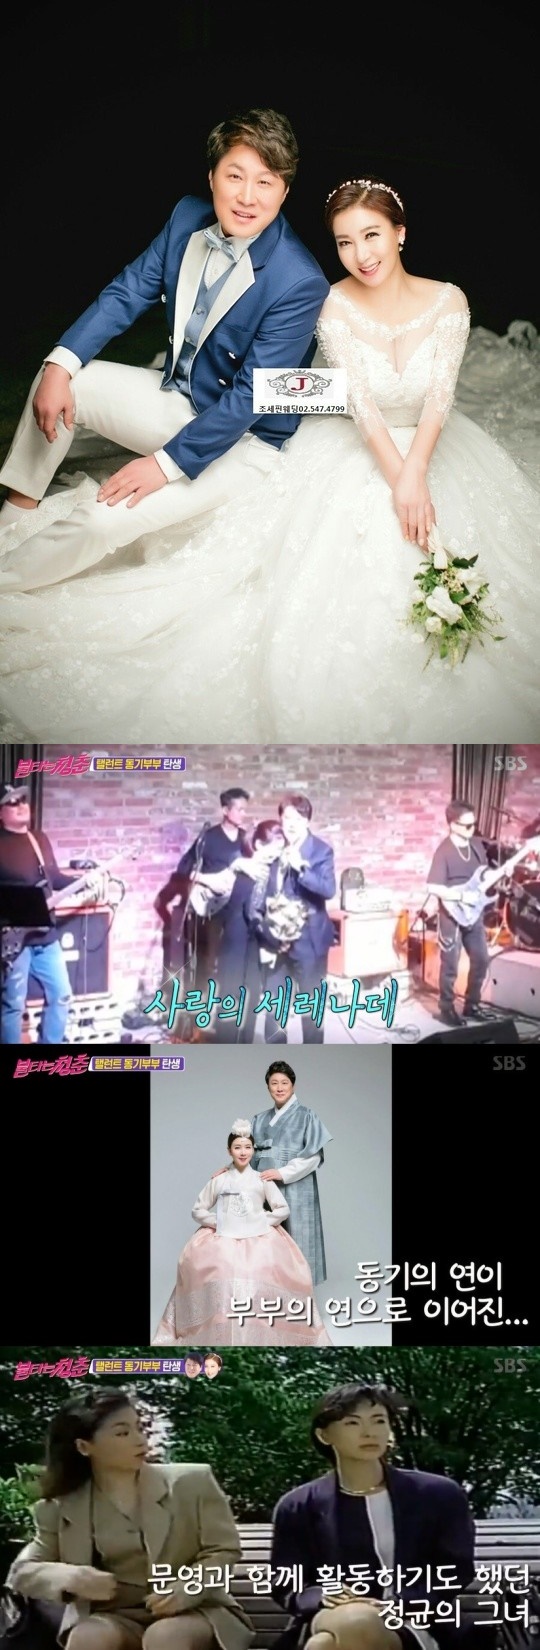 Kim Jung-kyun tuyên bố kết hôn với nam diễn viên Jung Min-kyung thông qua tuổi trẻ cháy bỏng